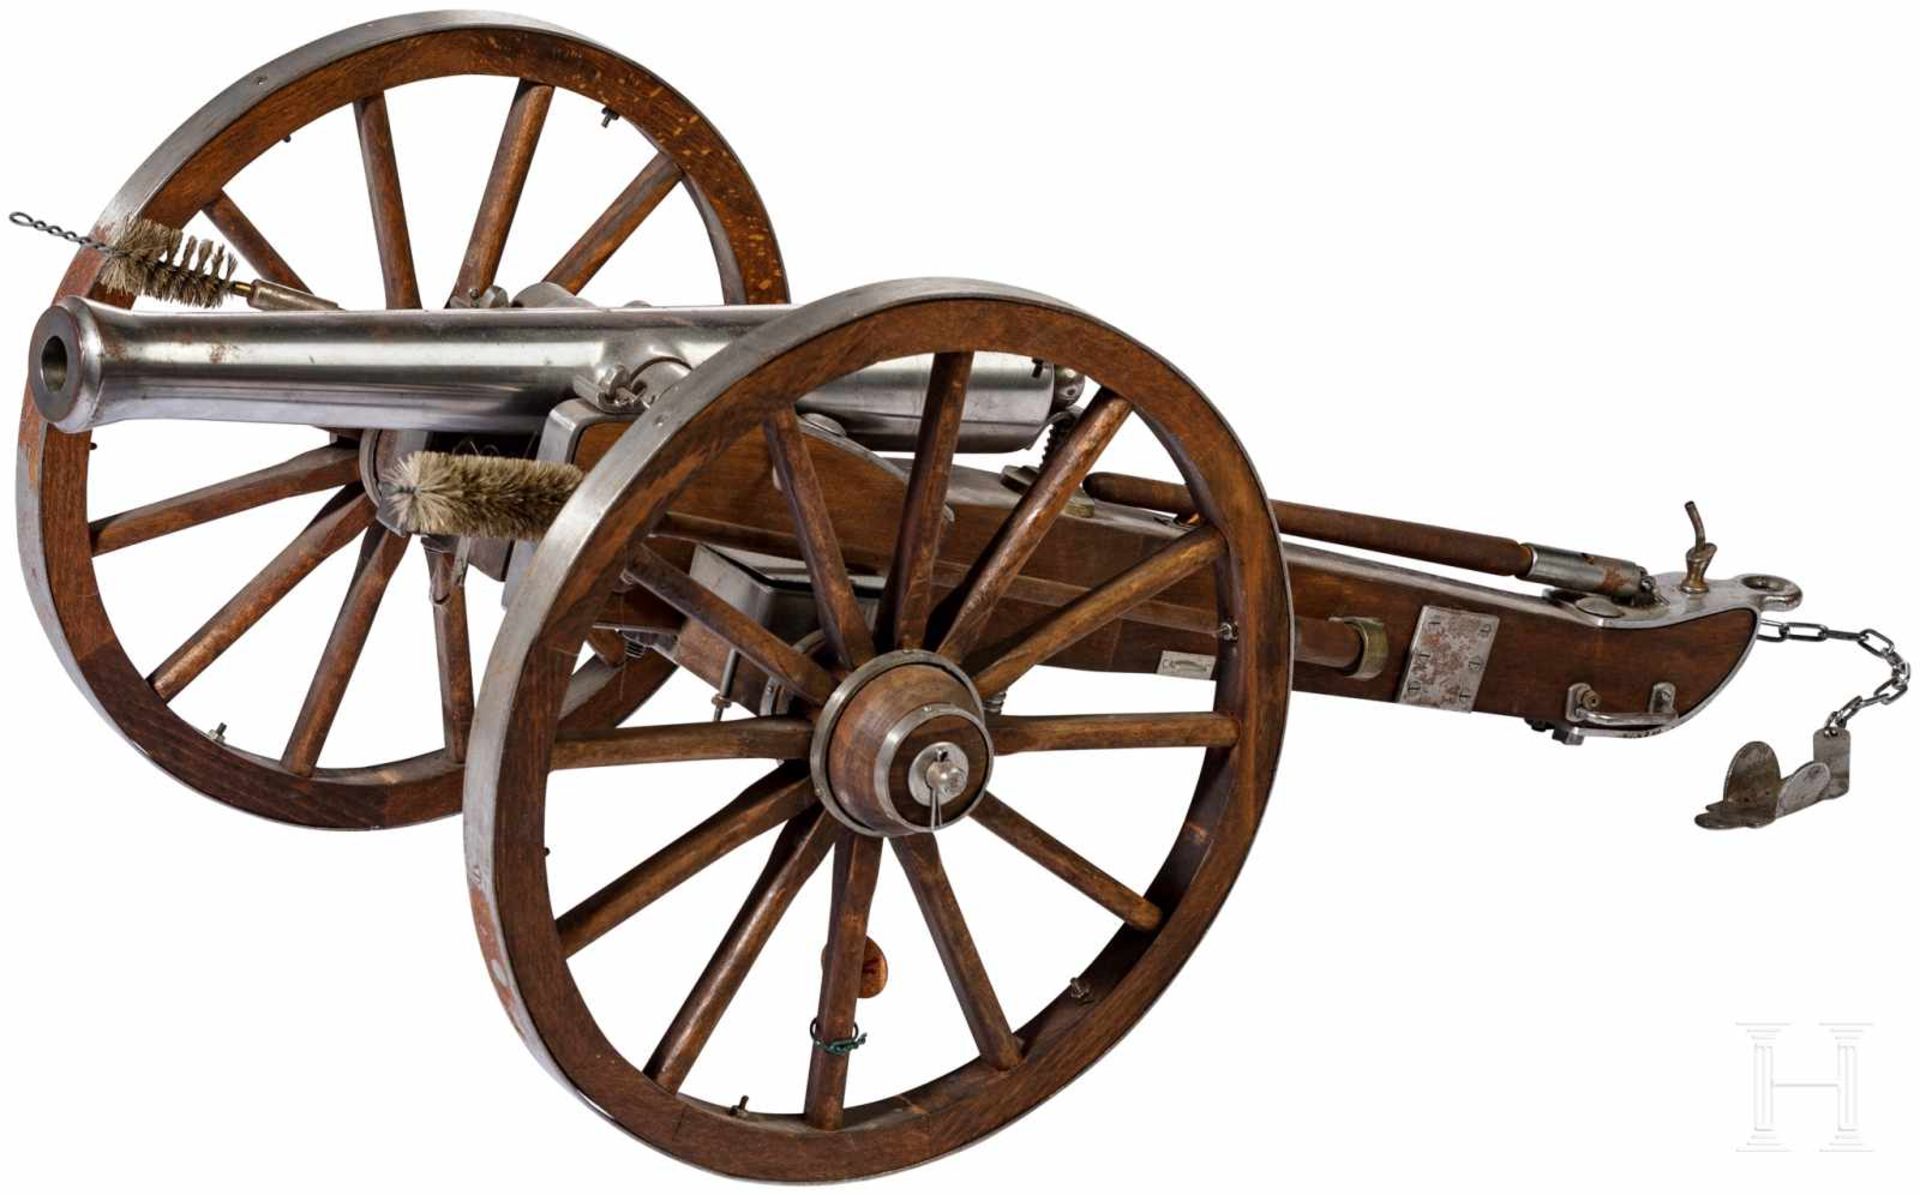 Miniatur-Kanone im Stil des 17. Jhdts., spanische Sammleranfertigung, zweite Hälfte 20. Jhdt.